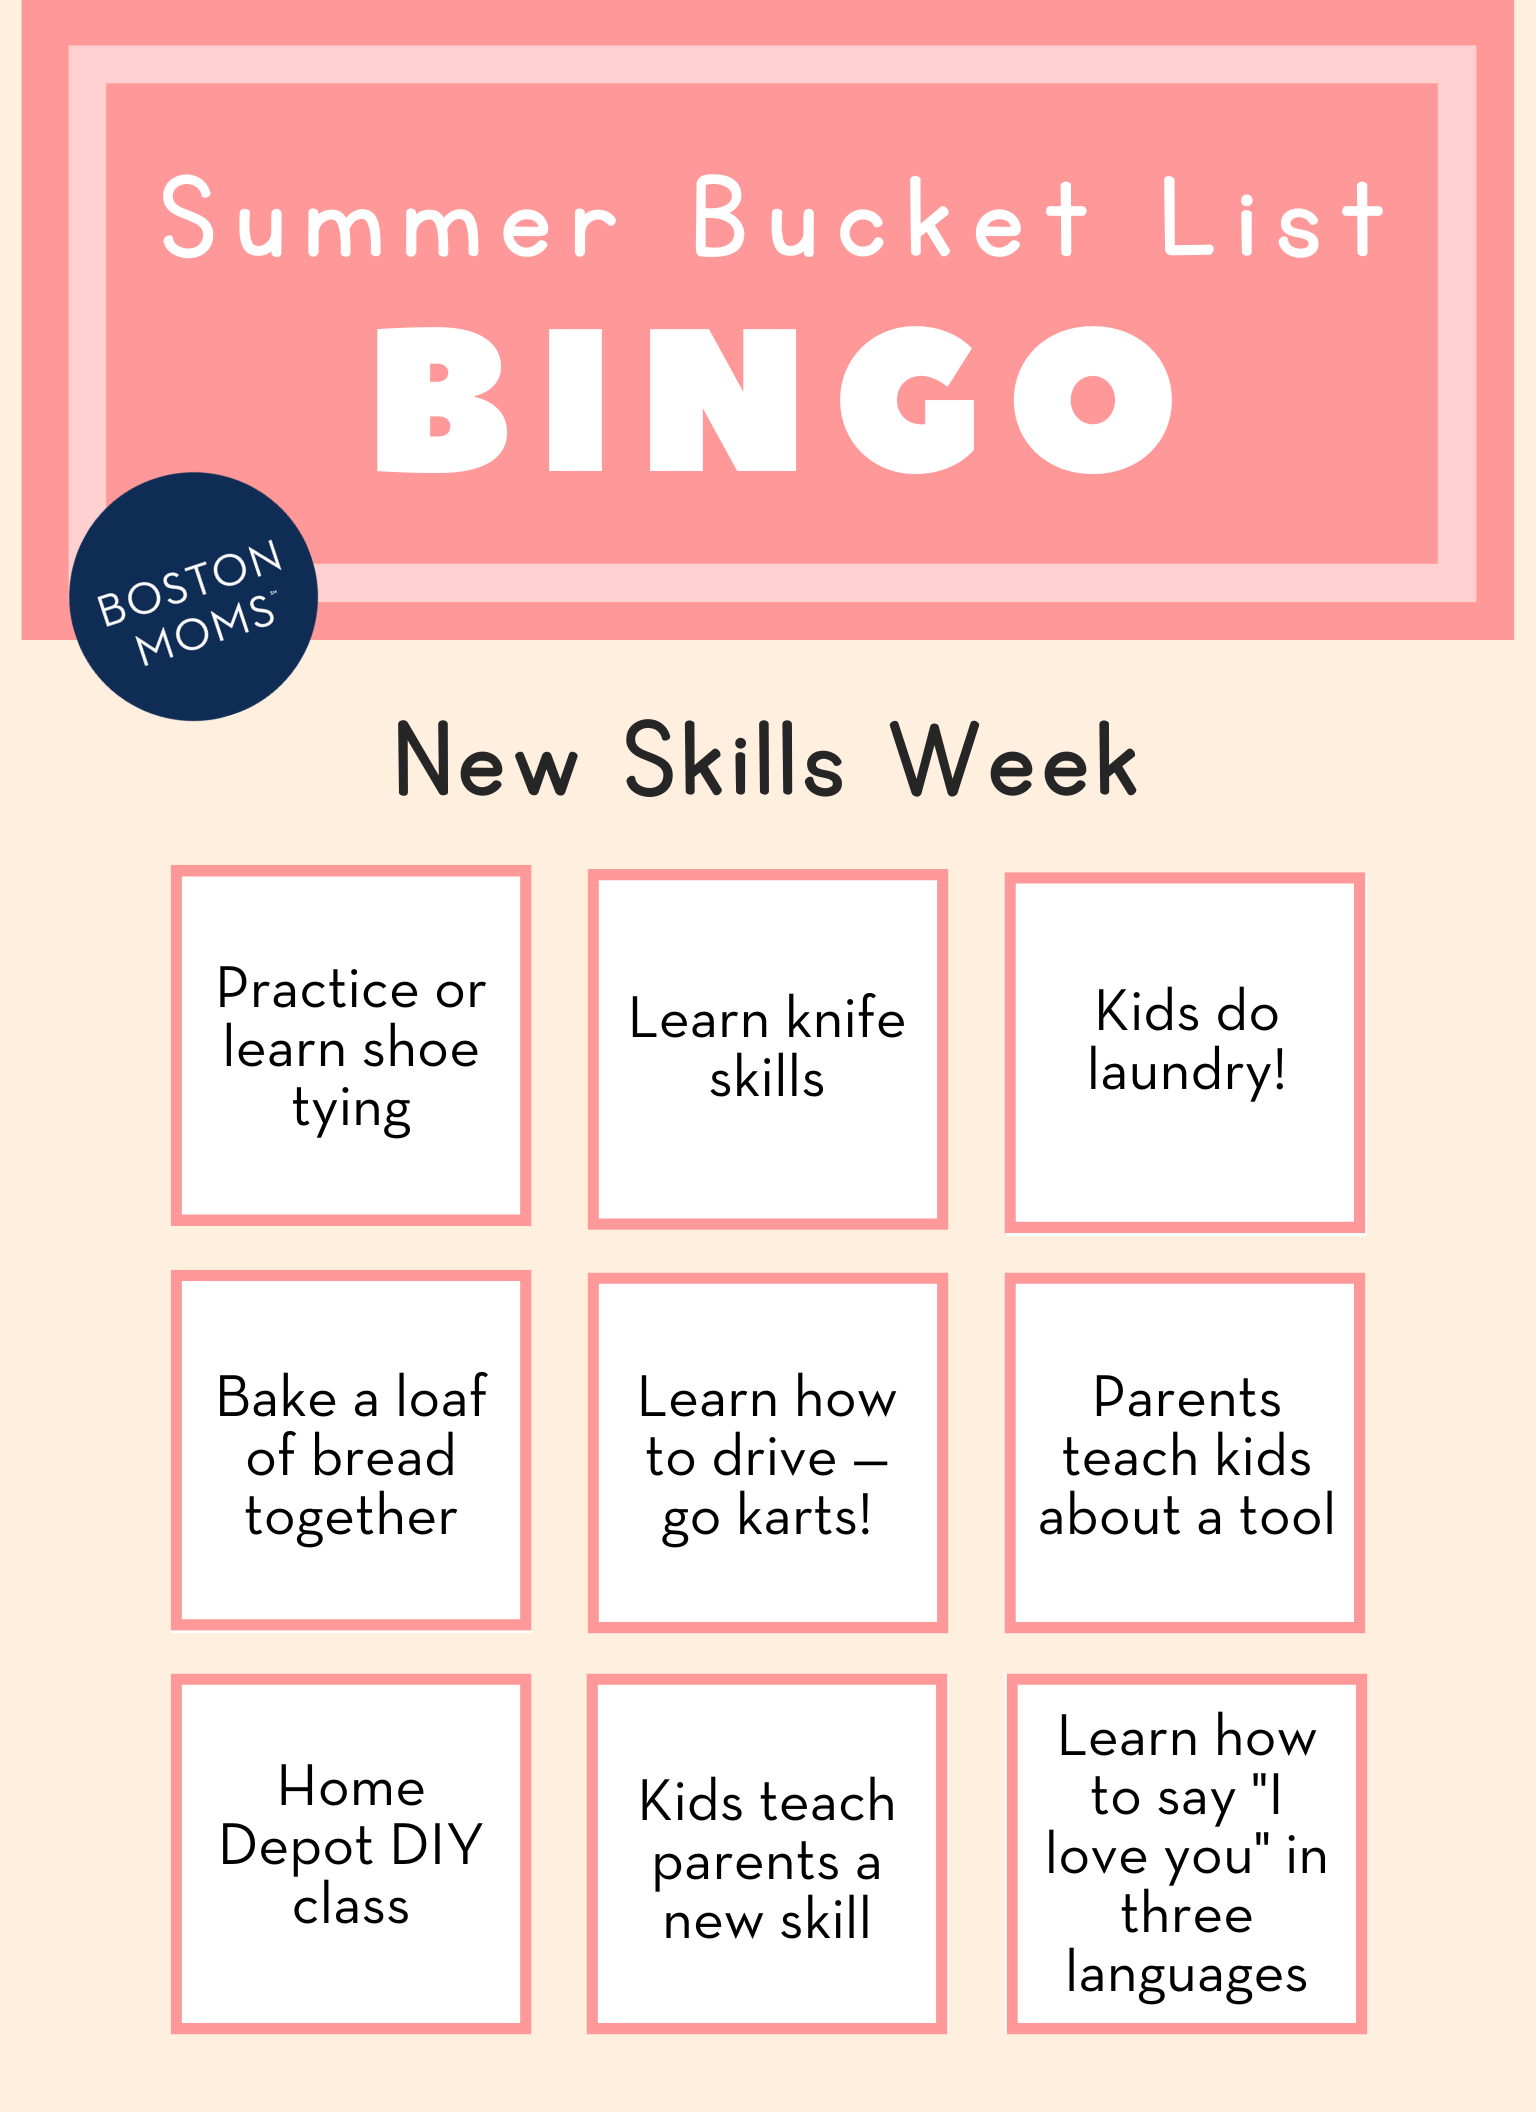 Boston summer bucket list for kids - learn a new skill week bingo